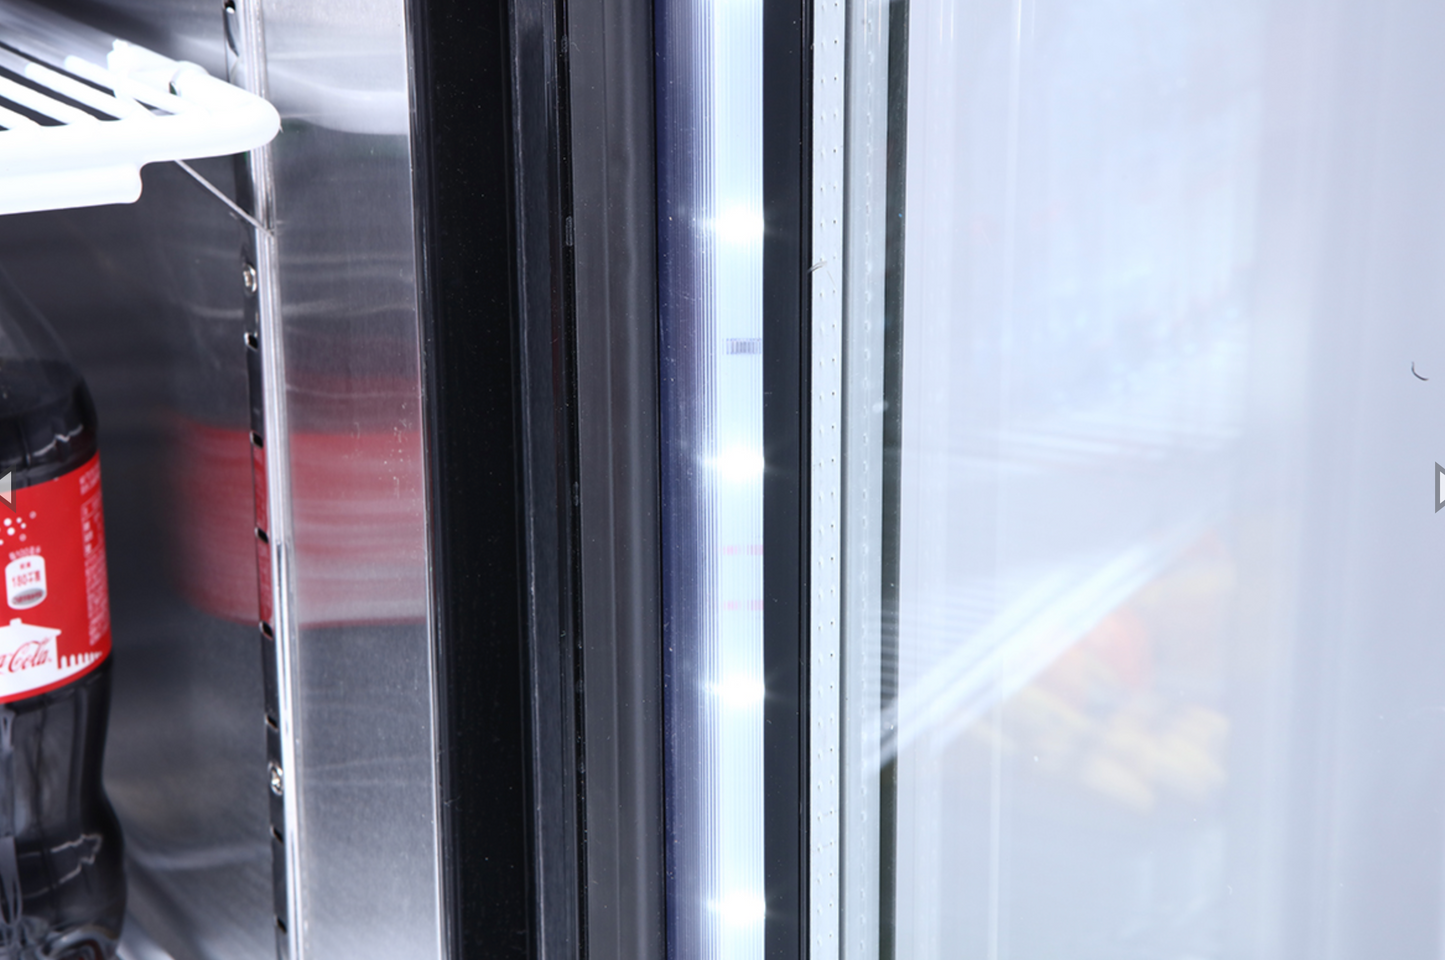 MCF8725GR  Black Cabinet Glass Door Merchandiser Cooler,Commercial Refrigerator  369320